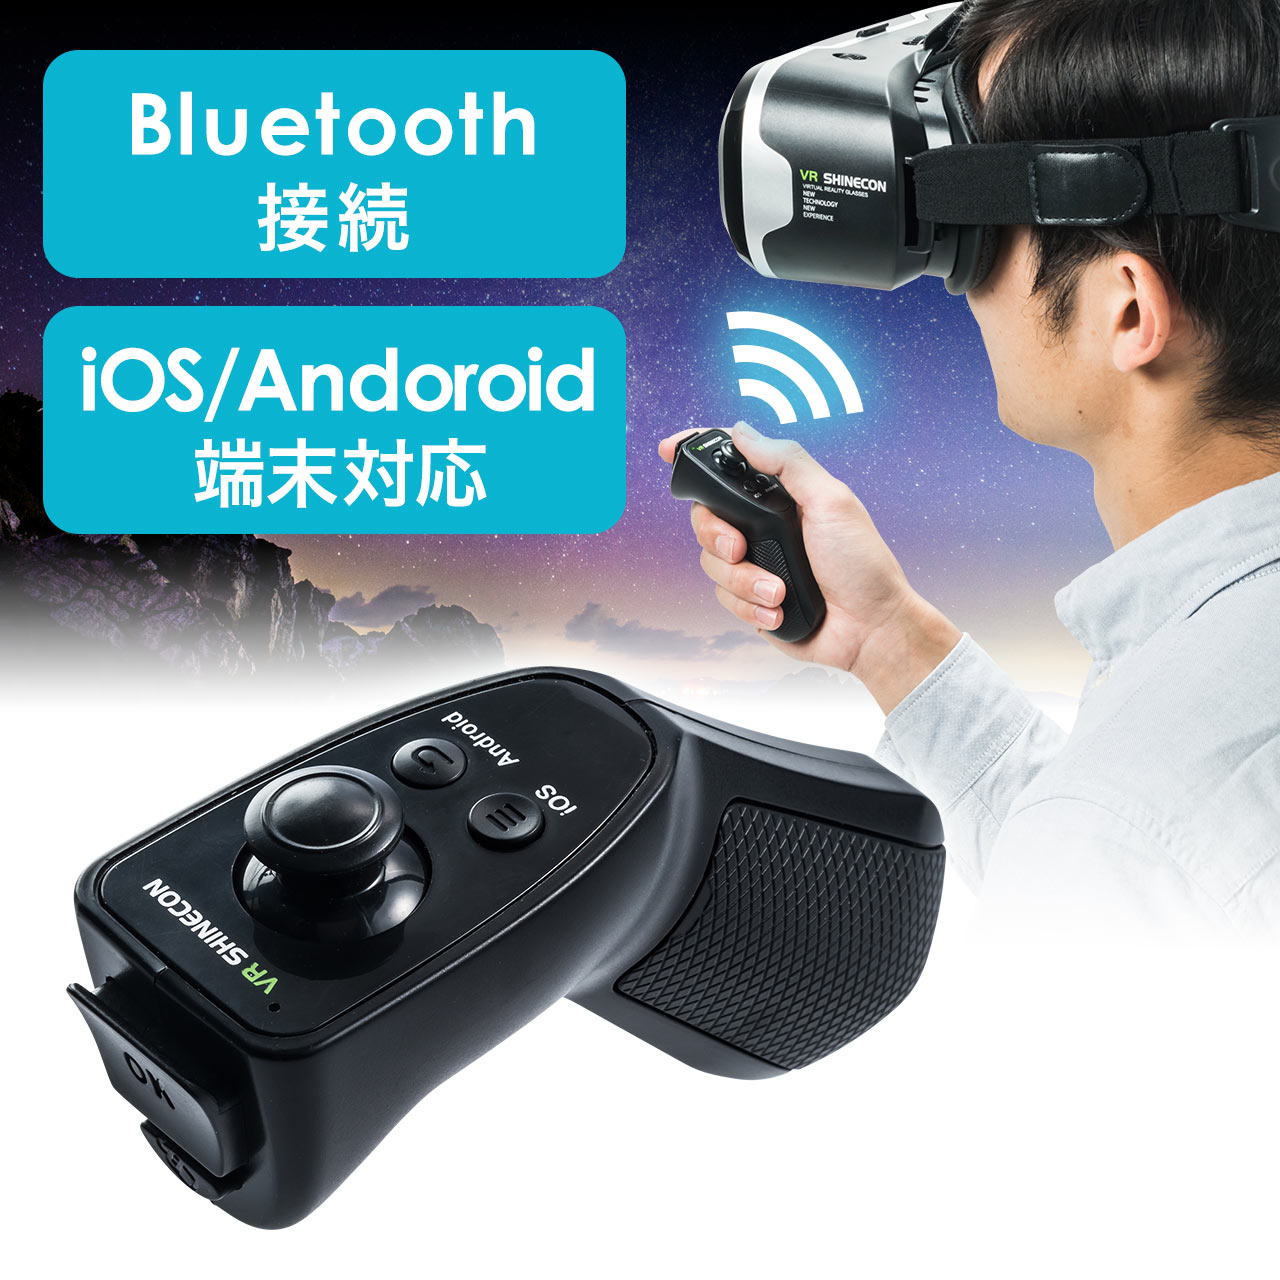 3d Vrゴーグル用リモコン Vr Bluetooth コントローラー Iphone Android対応 400 Medivrcr1の販売商品 通販ならサンワダイレクト